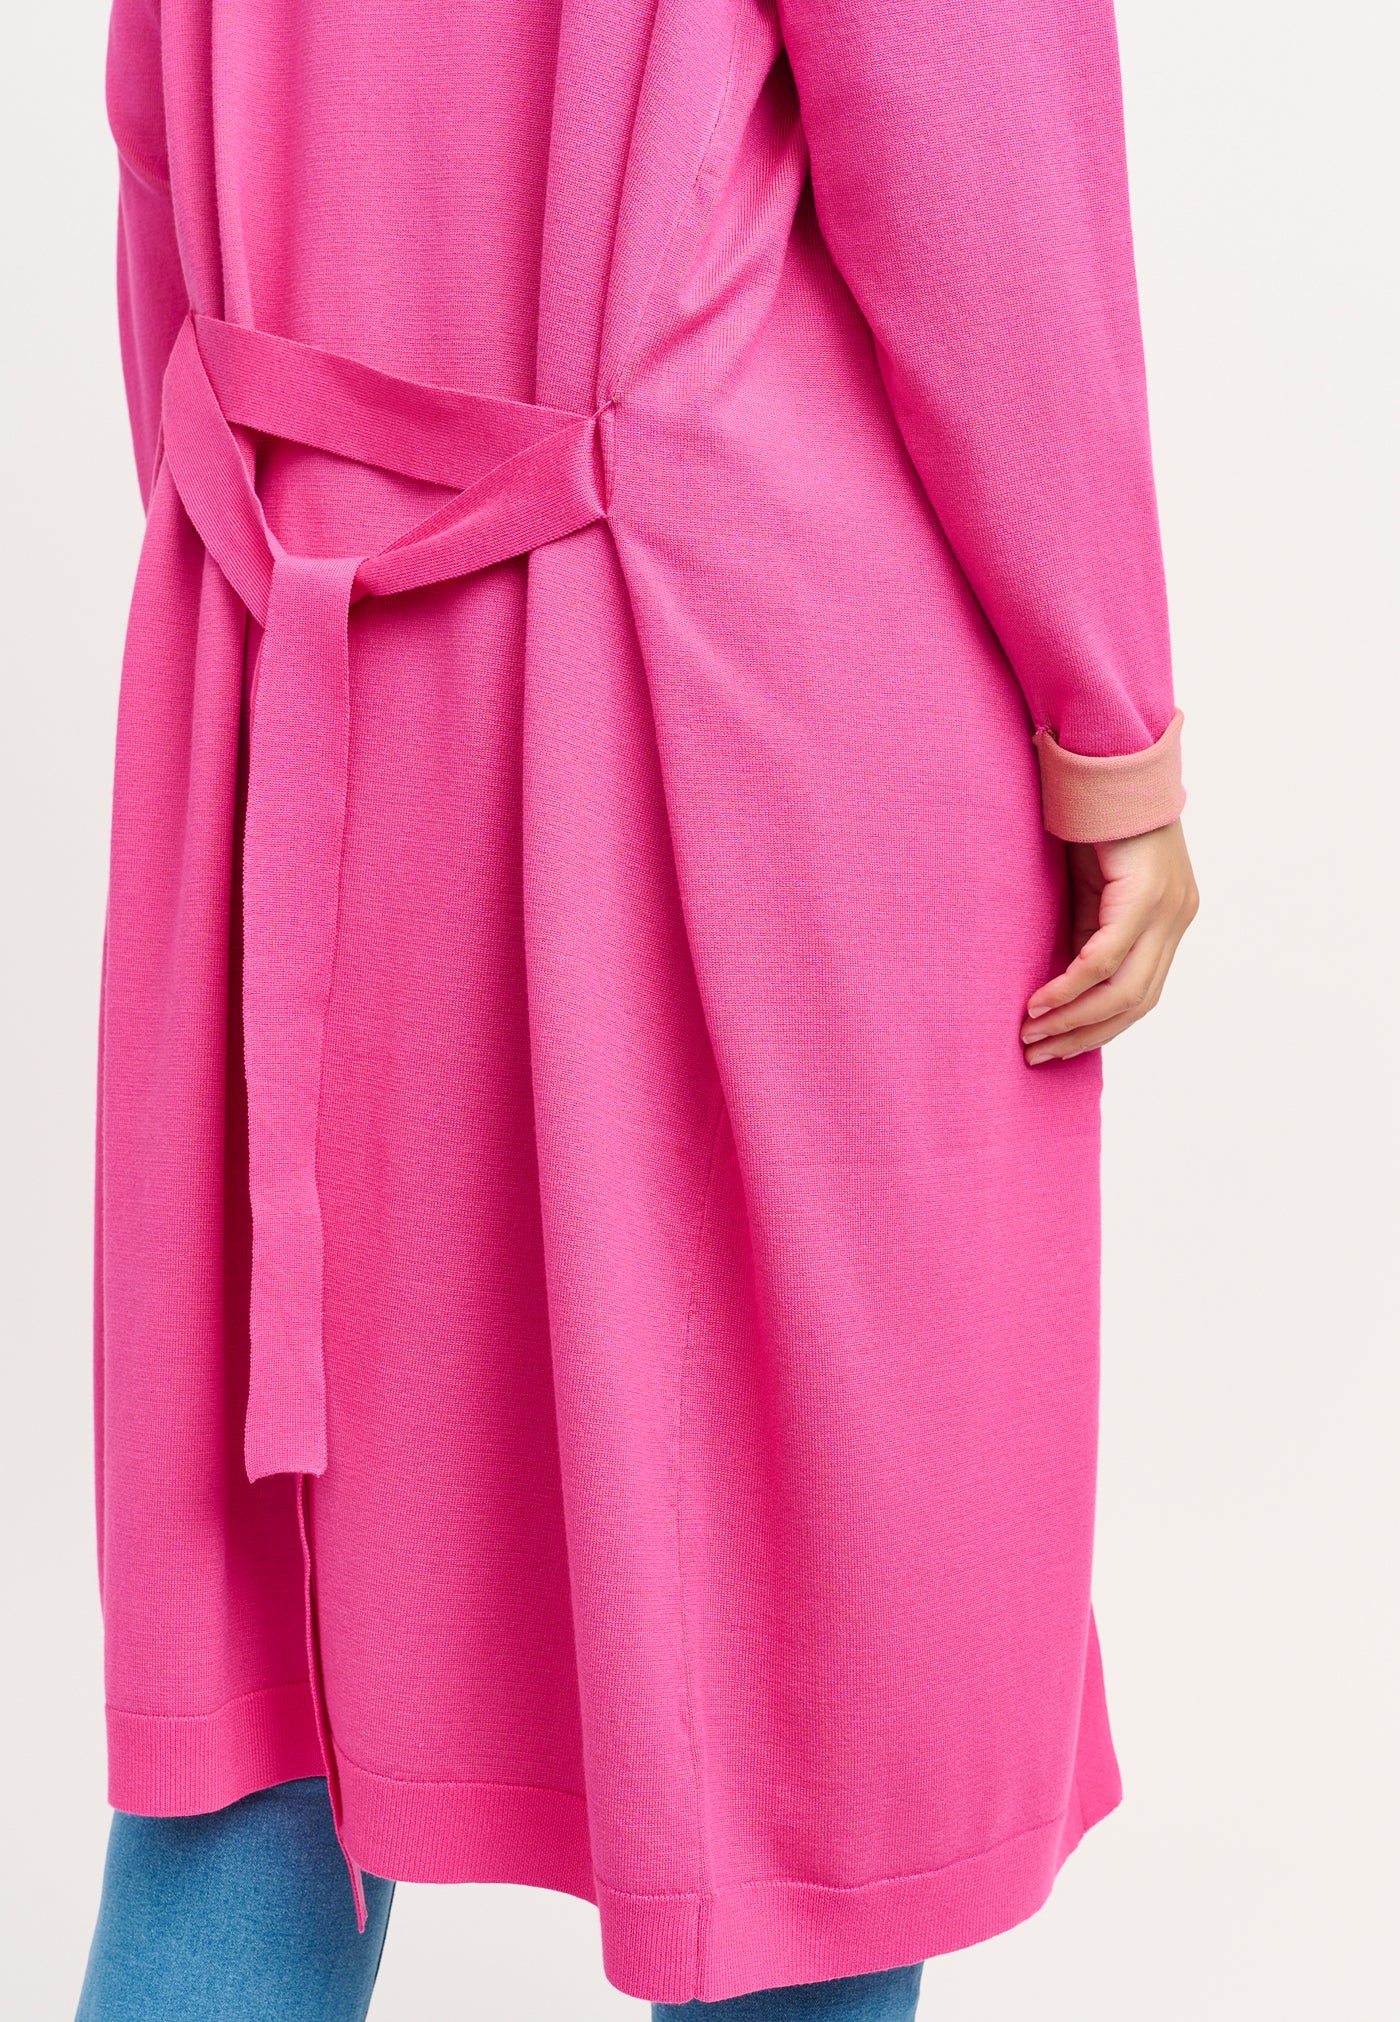 Adia ADEva Knit Cardigan 6450 Fuchsia Pink